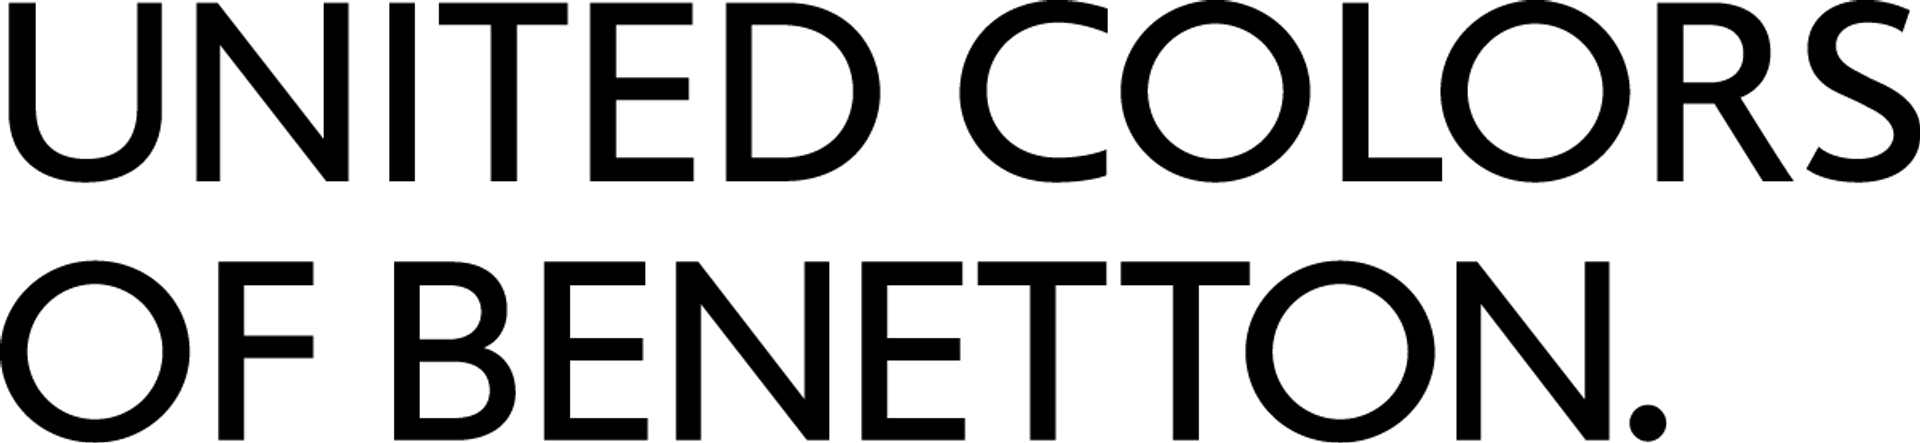 UNITED COLORS OF BENETTON logo in de folder van deze week